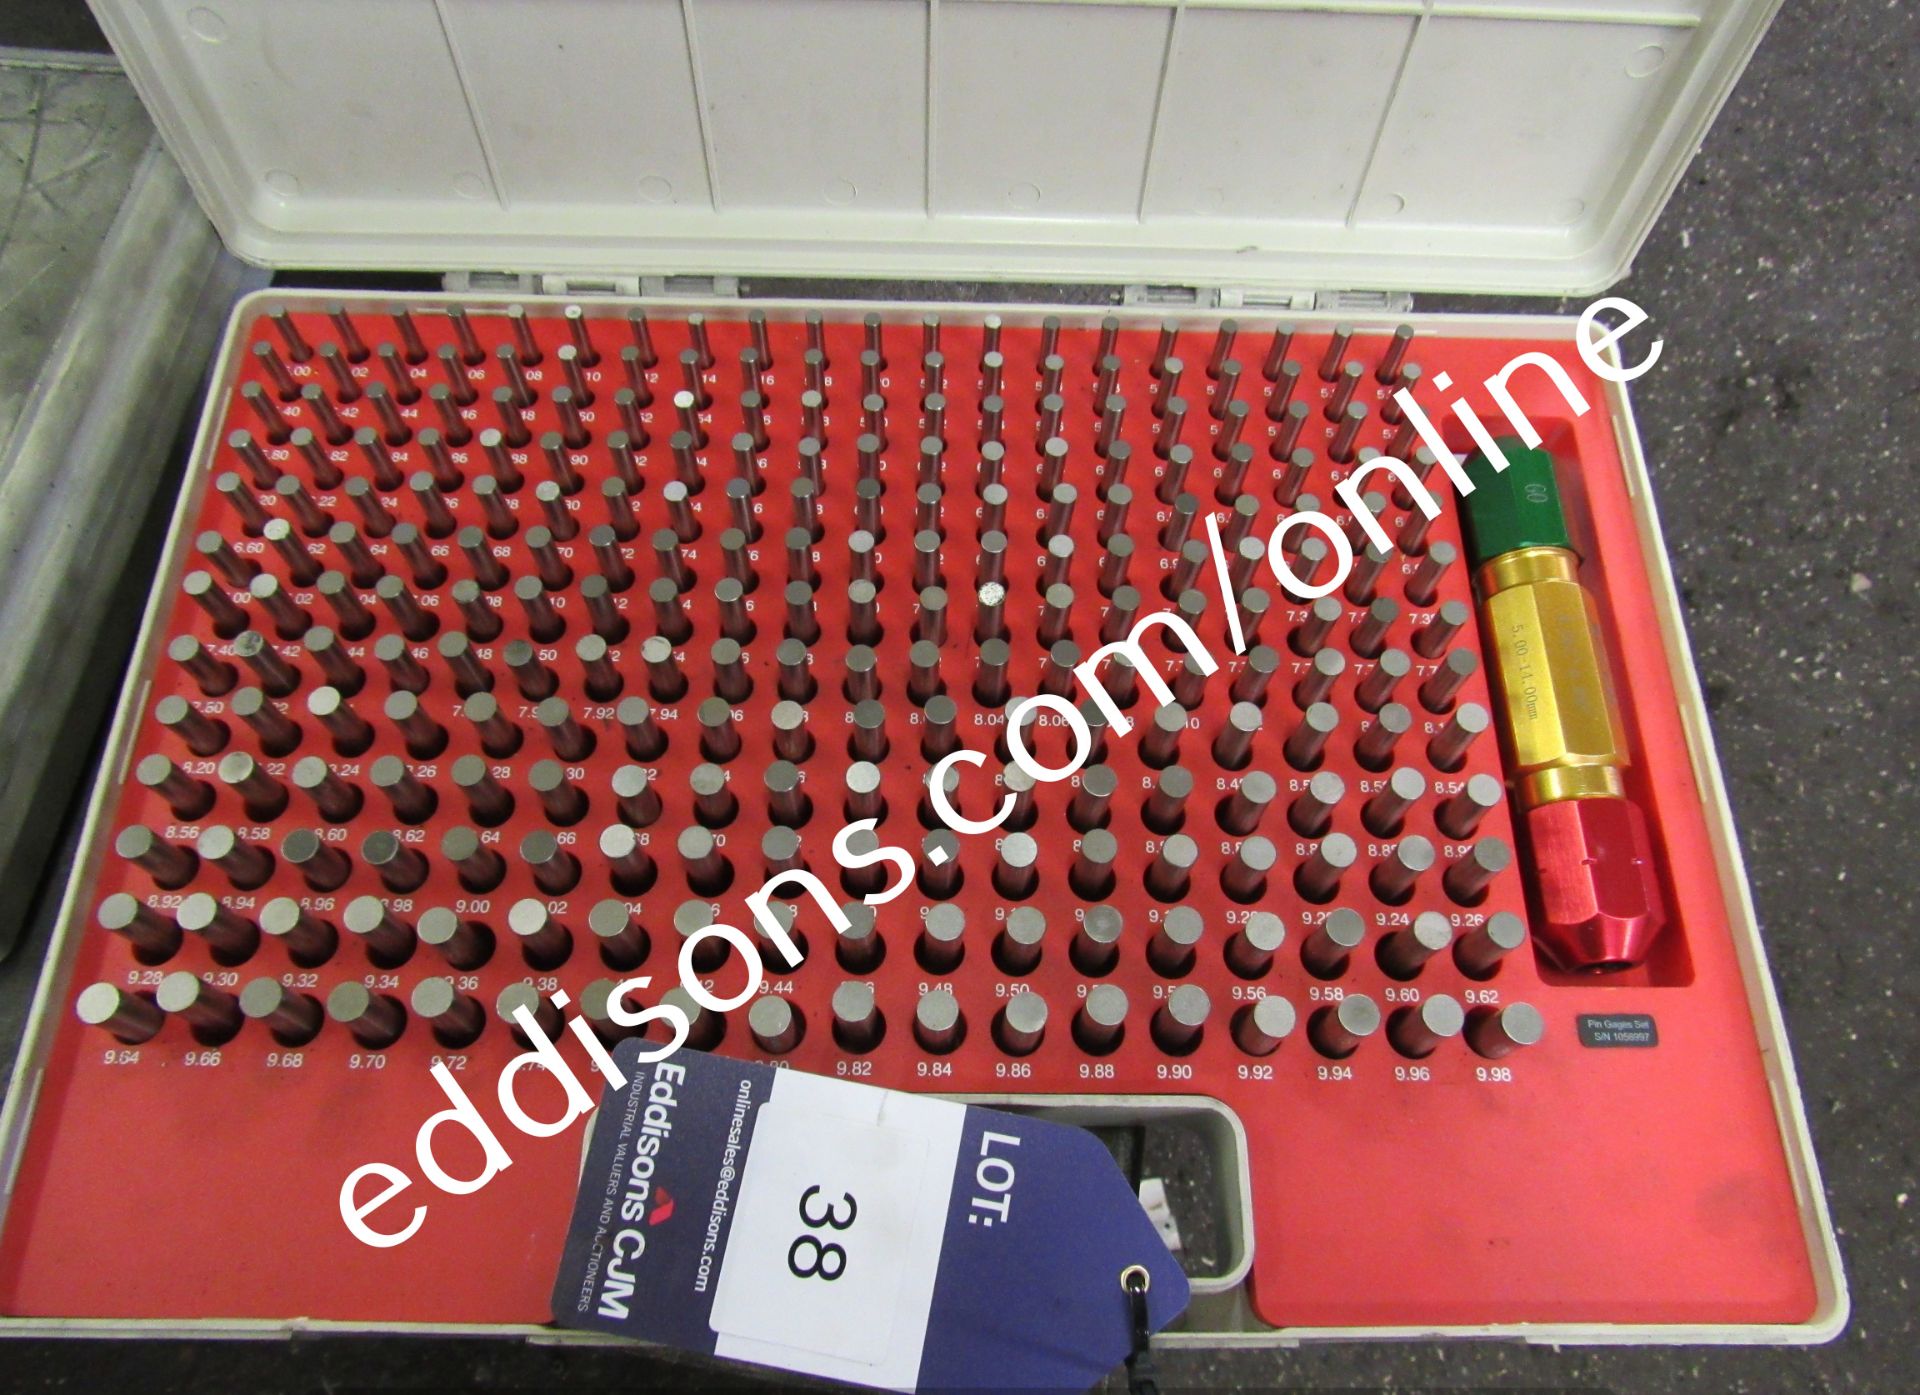 2 SPI Pin Gauge Sets, missing 1 pin - Image 2 of 4